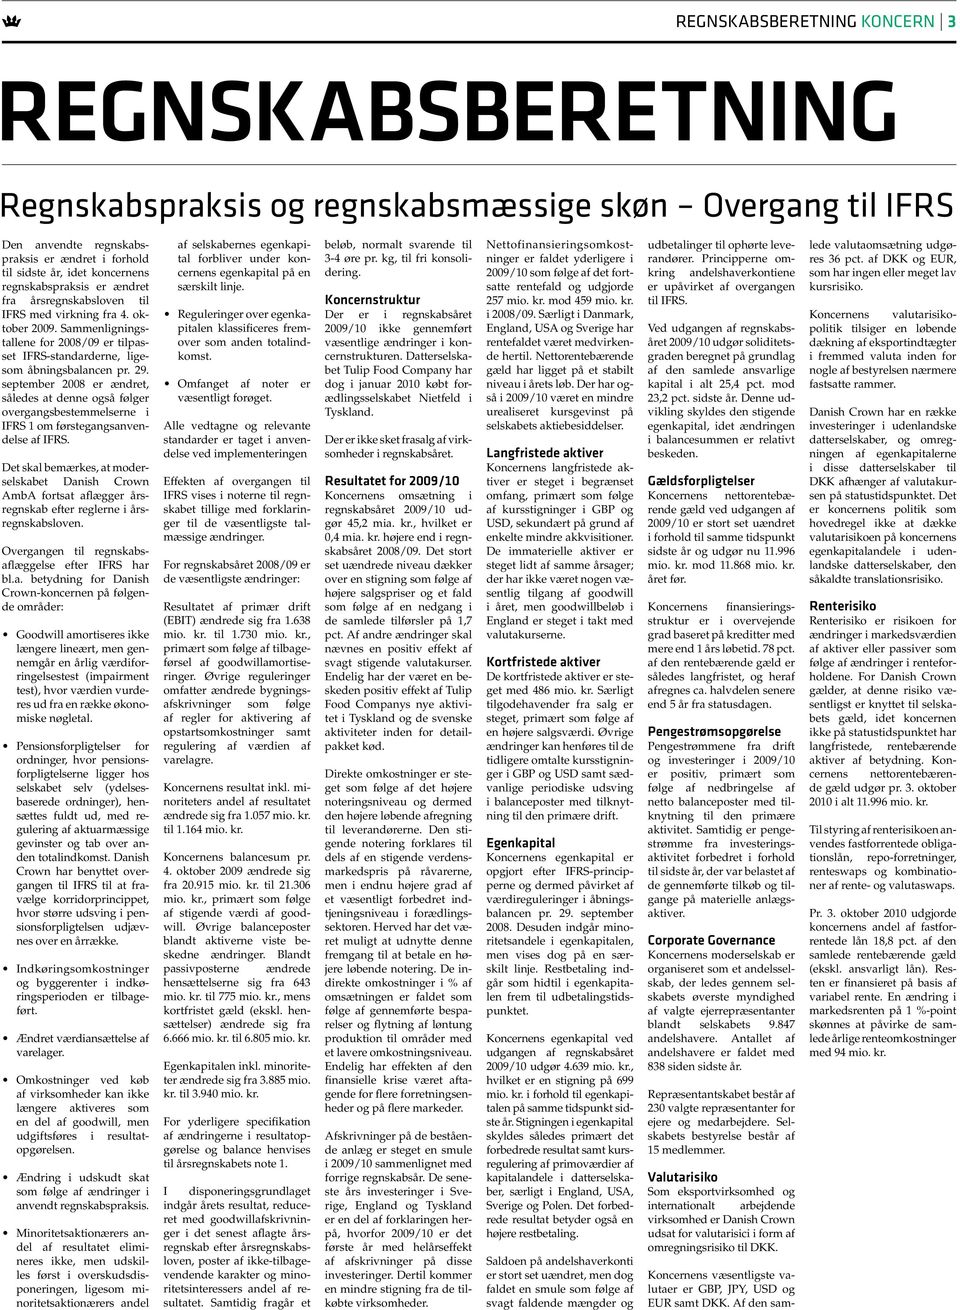 september 2008 er ændret, således at denne også følger overgangsbestemmelserne i IFRS 1 om førstegangsanvendelse af IFRS.